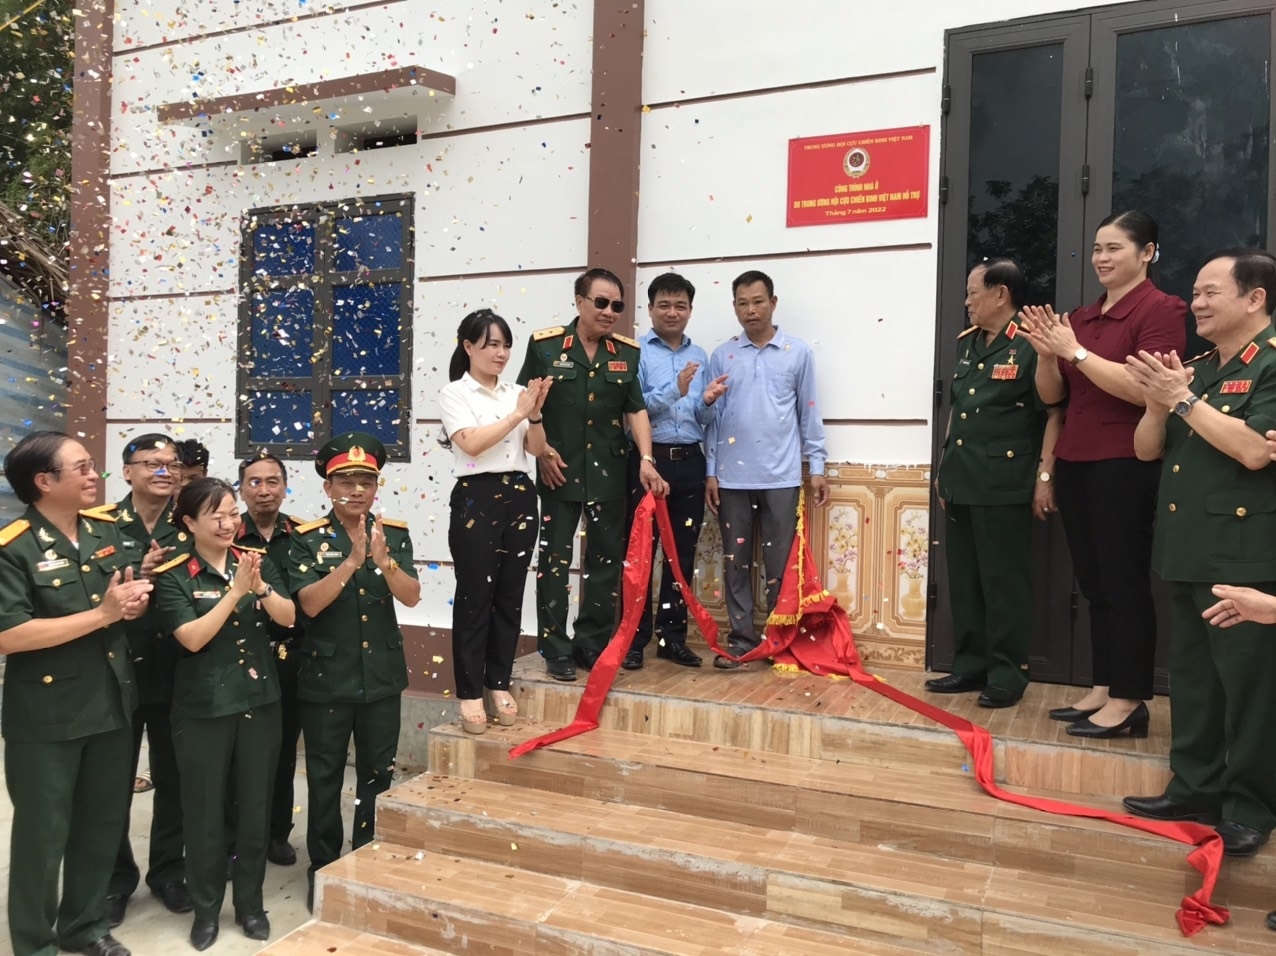 đến thăm, tặng quà đối tượng chính sách và cắt băng khánh thành Nhà nghĩa tình đồng đội tại xã Bình Yên, huyện Sơn Dương, tỉnh Tuyên Quang.